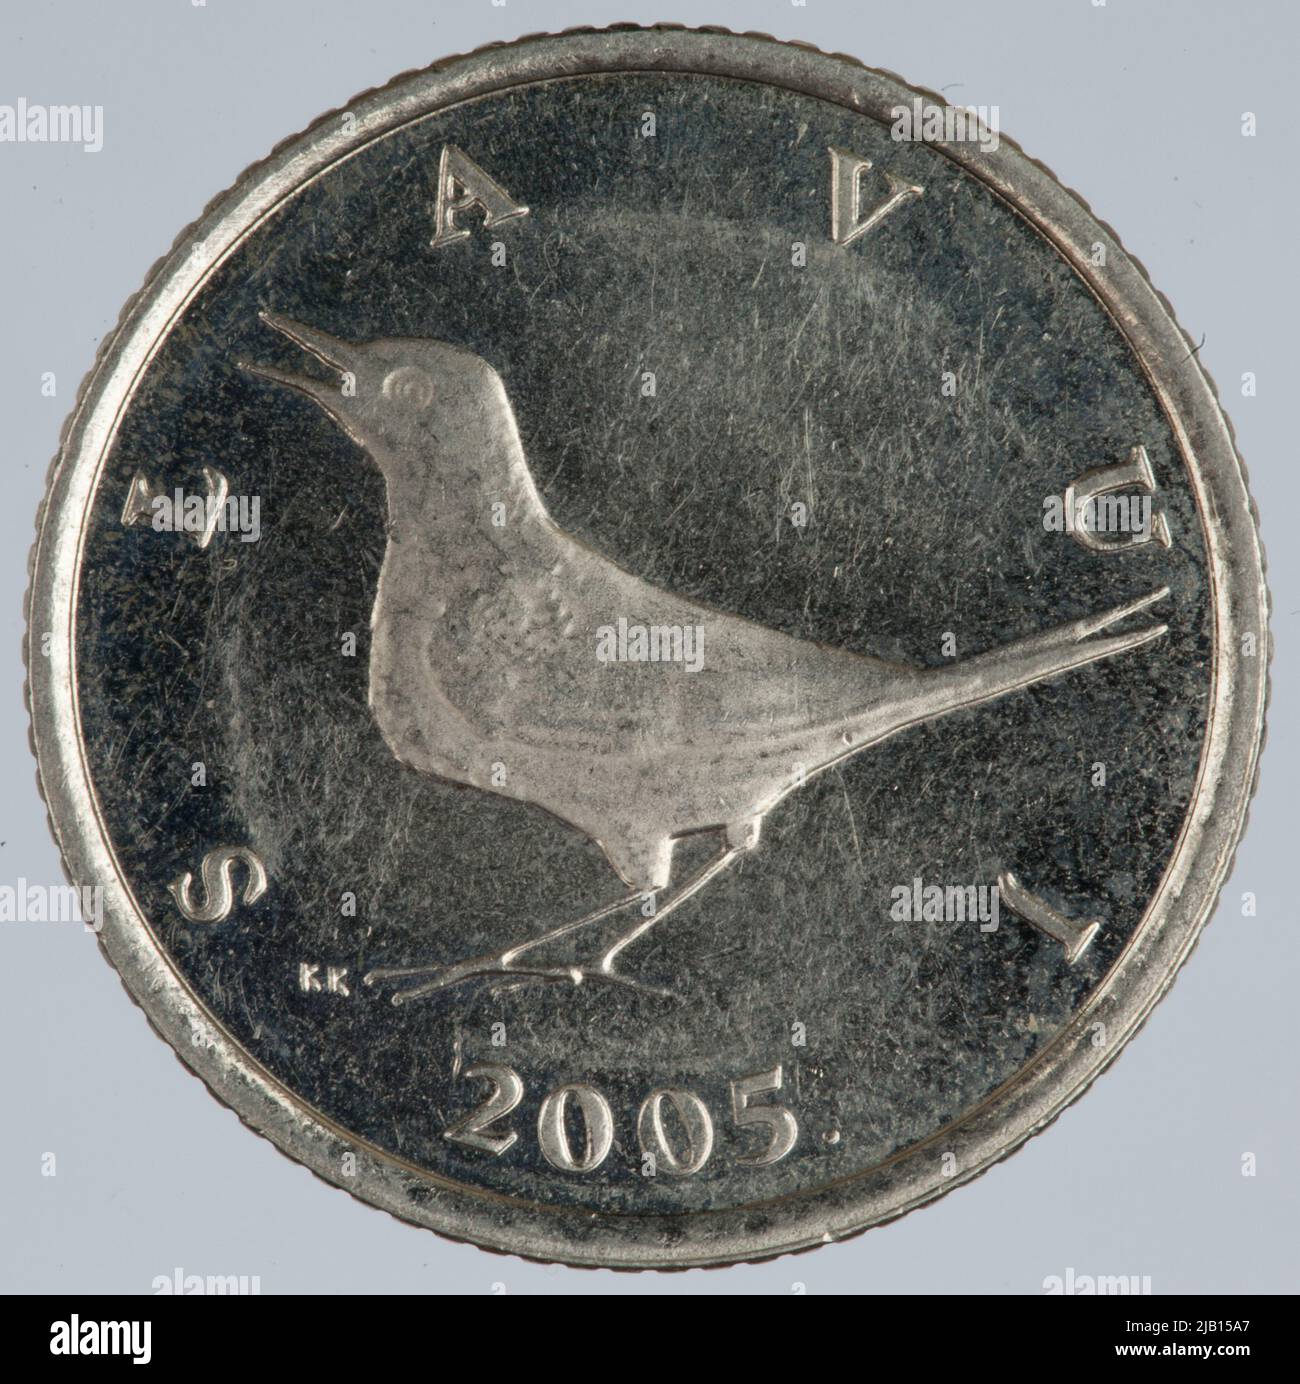 Croatia, 1 kuna; 2005 Zagreb Mint Stock Photo